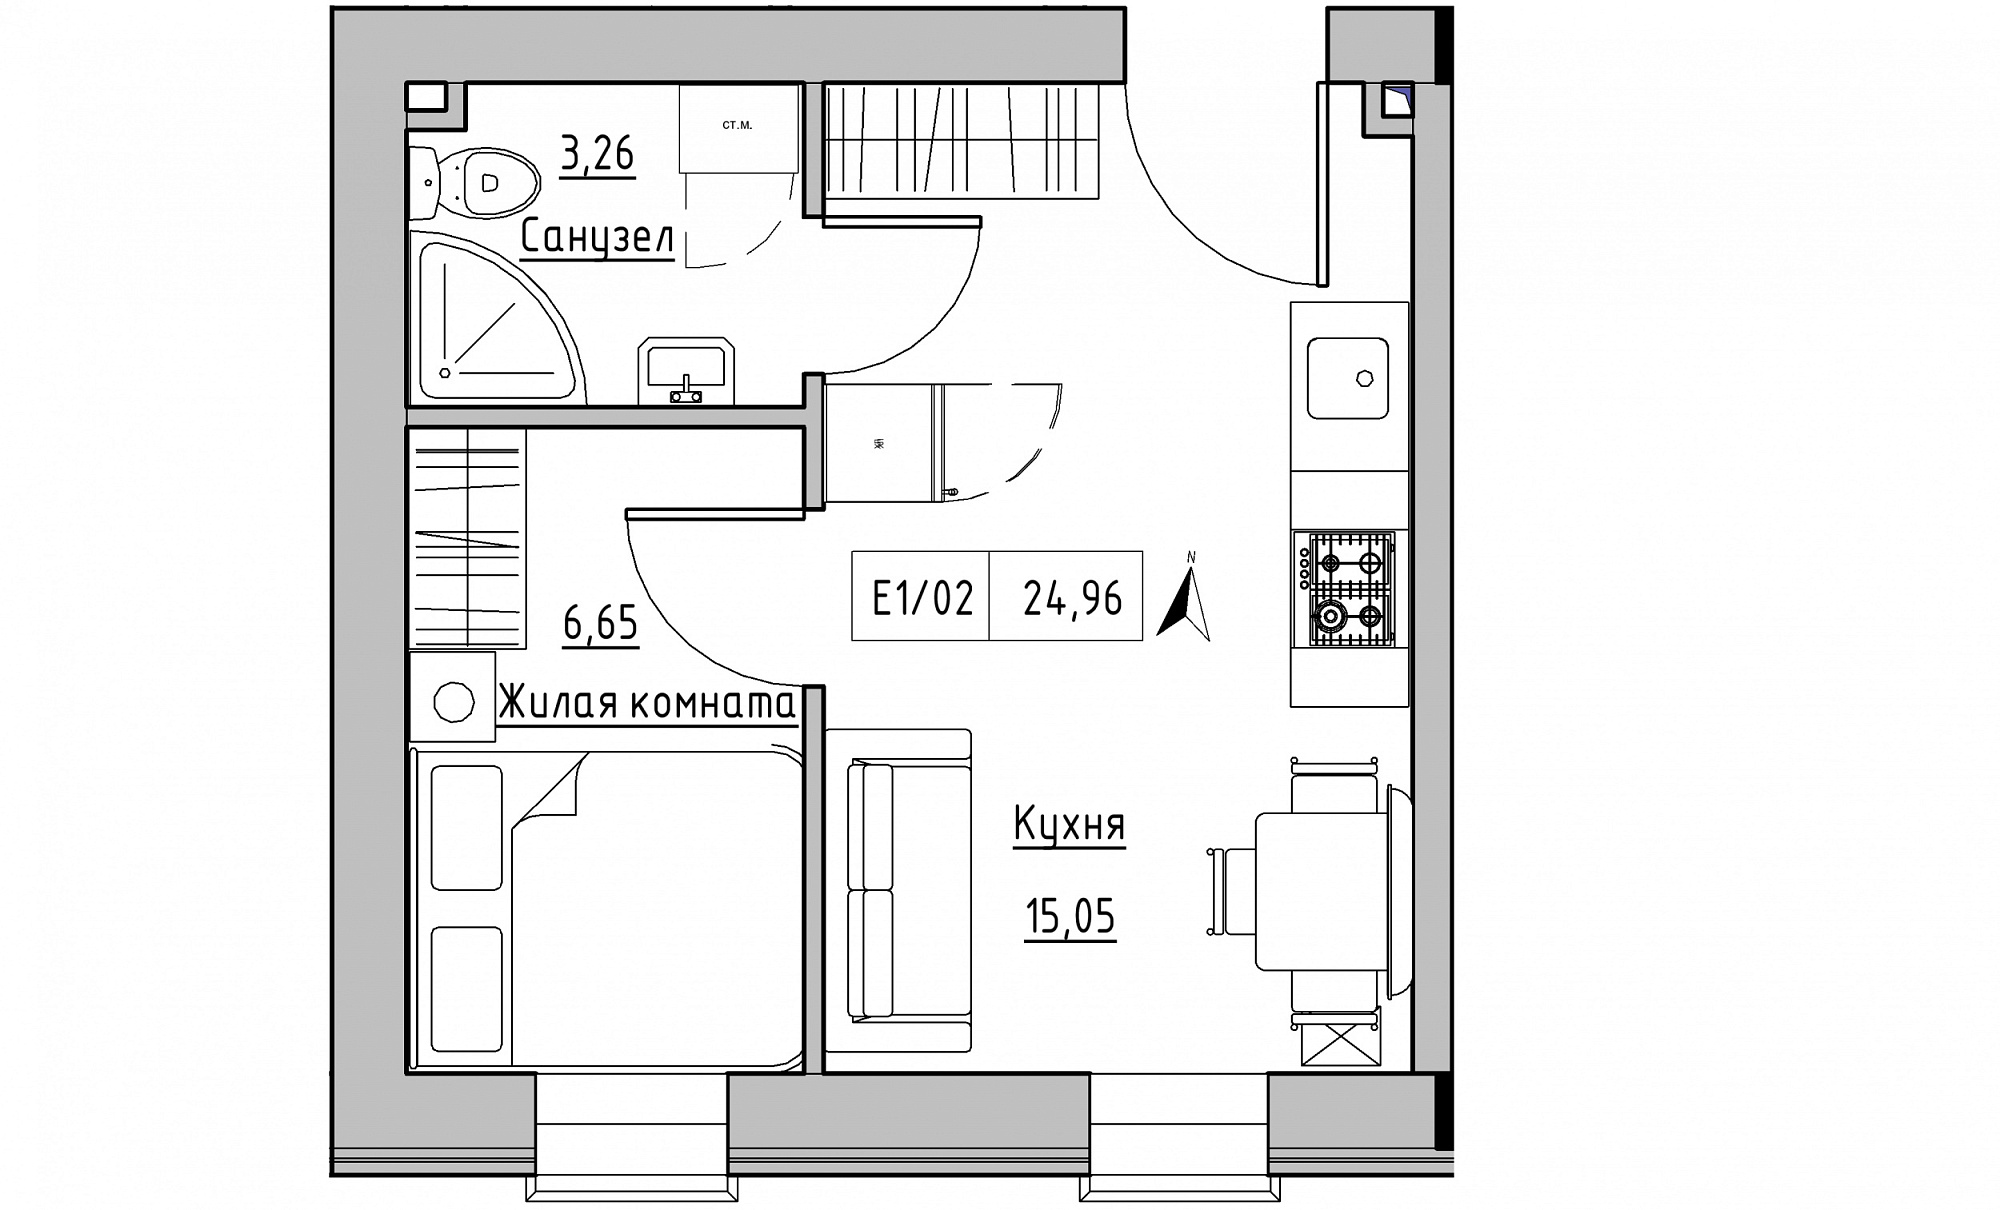 Планування 1-к квартира площею 24.96м2, KS-015-04/0012.